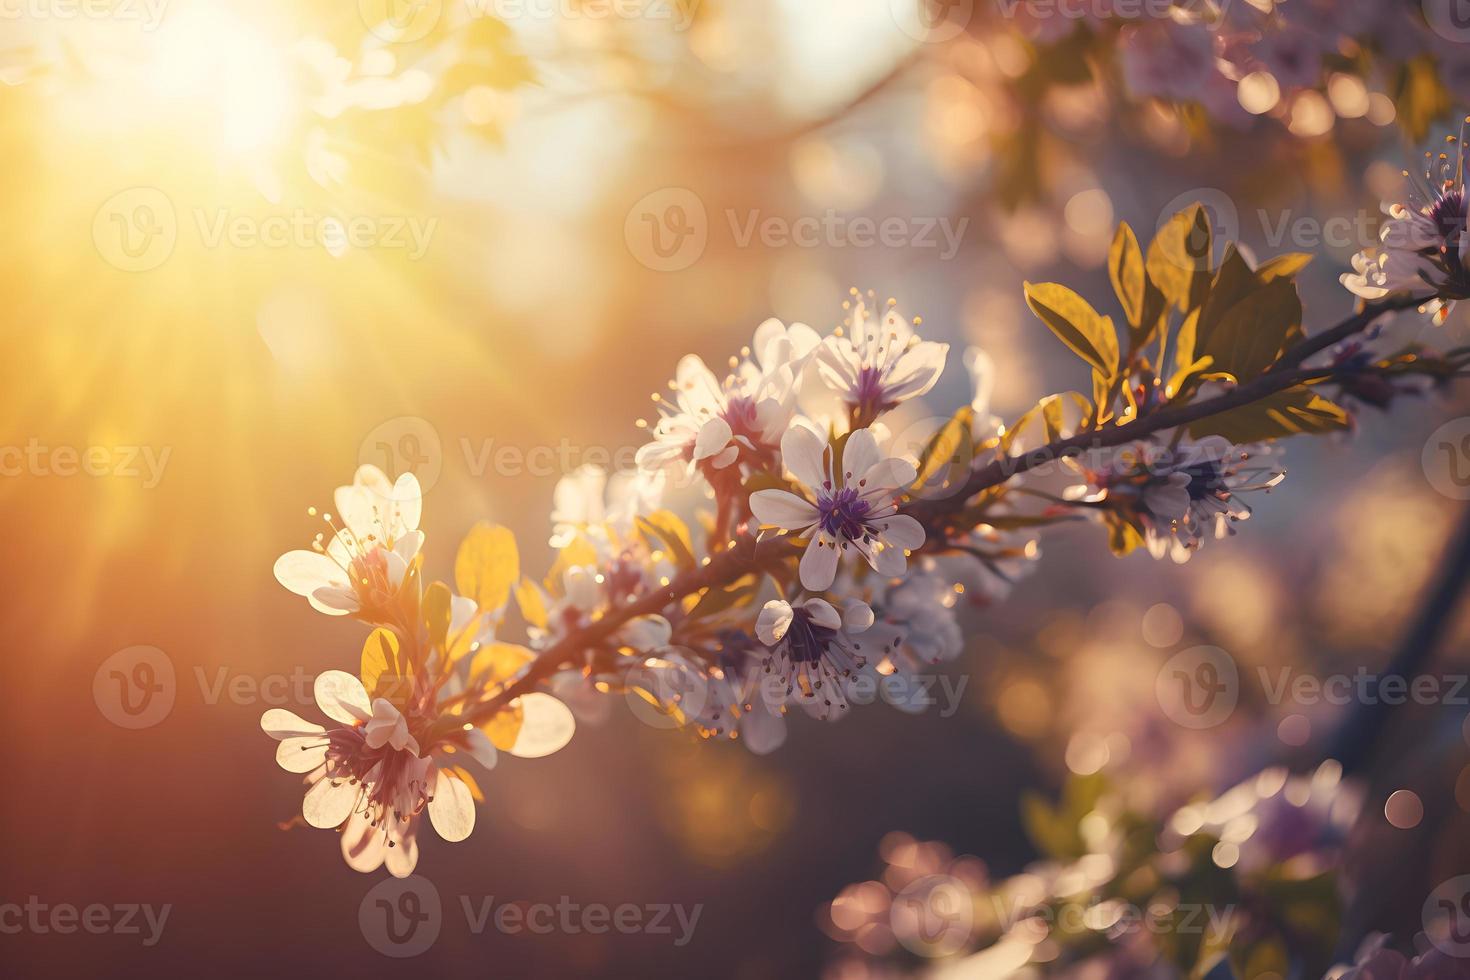 primavera fiorire sfondo. natura scena con fioritura albero e sole bagliore. primavera fiori. bellissimo frutteto fotografia foto